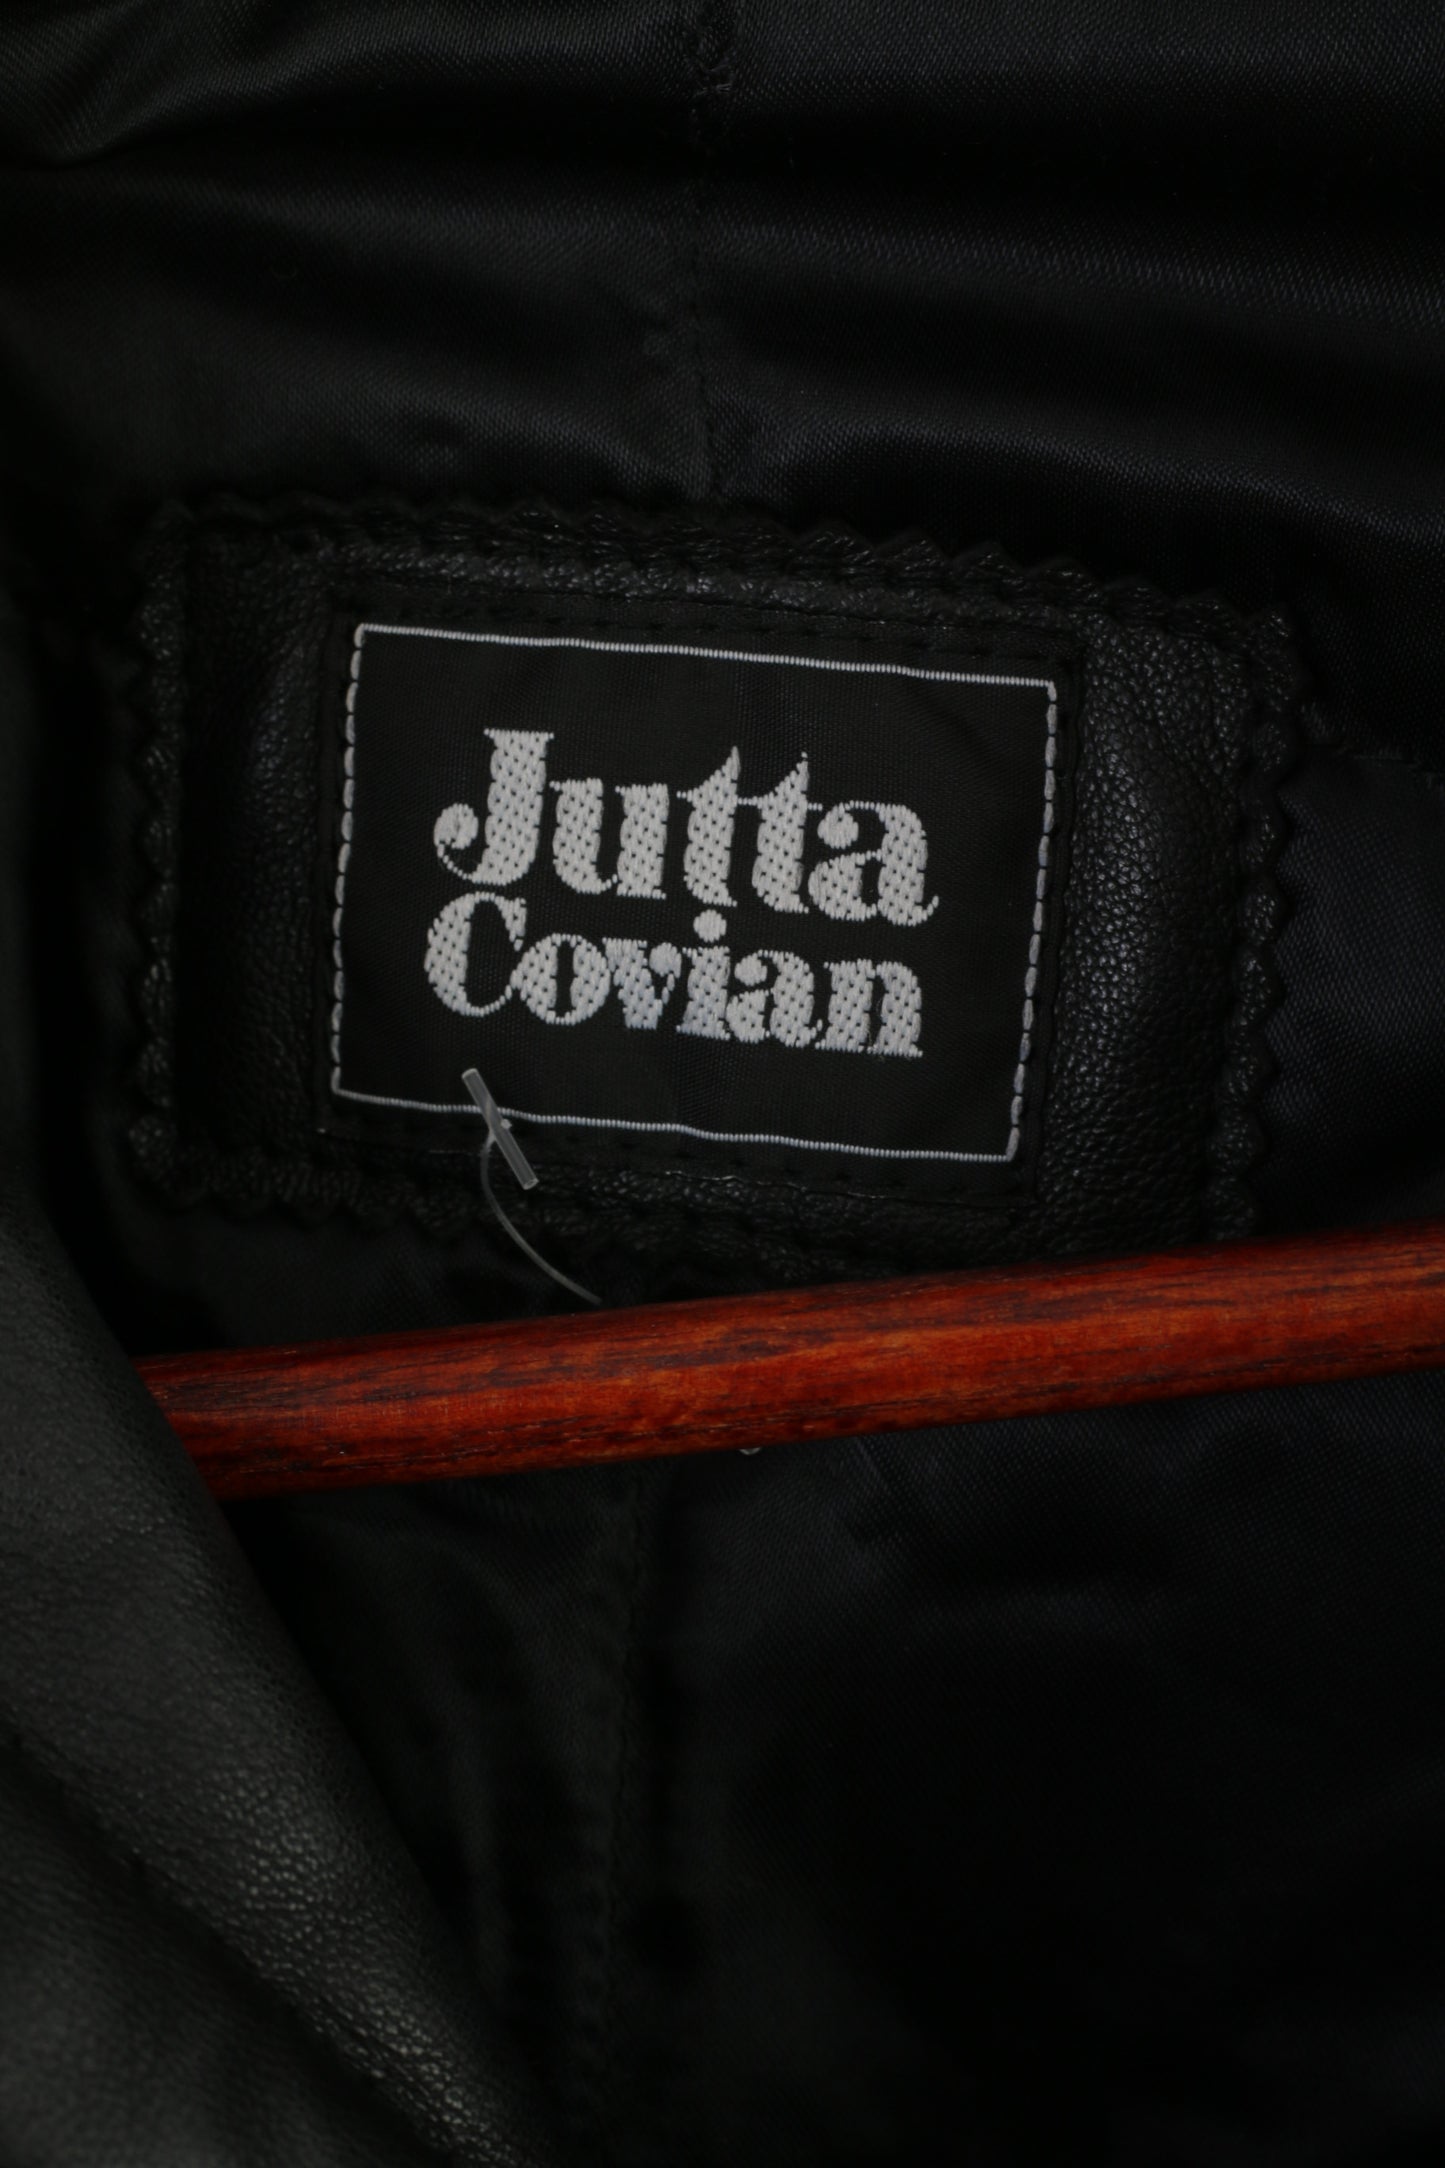 Jutta Covian Femmes 40 10 M Veste Bleu Ptachwork vintage années 80 Espagne Épaulettes Oversize Top